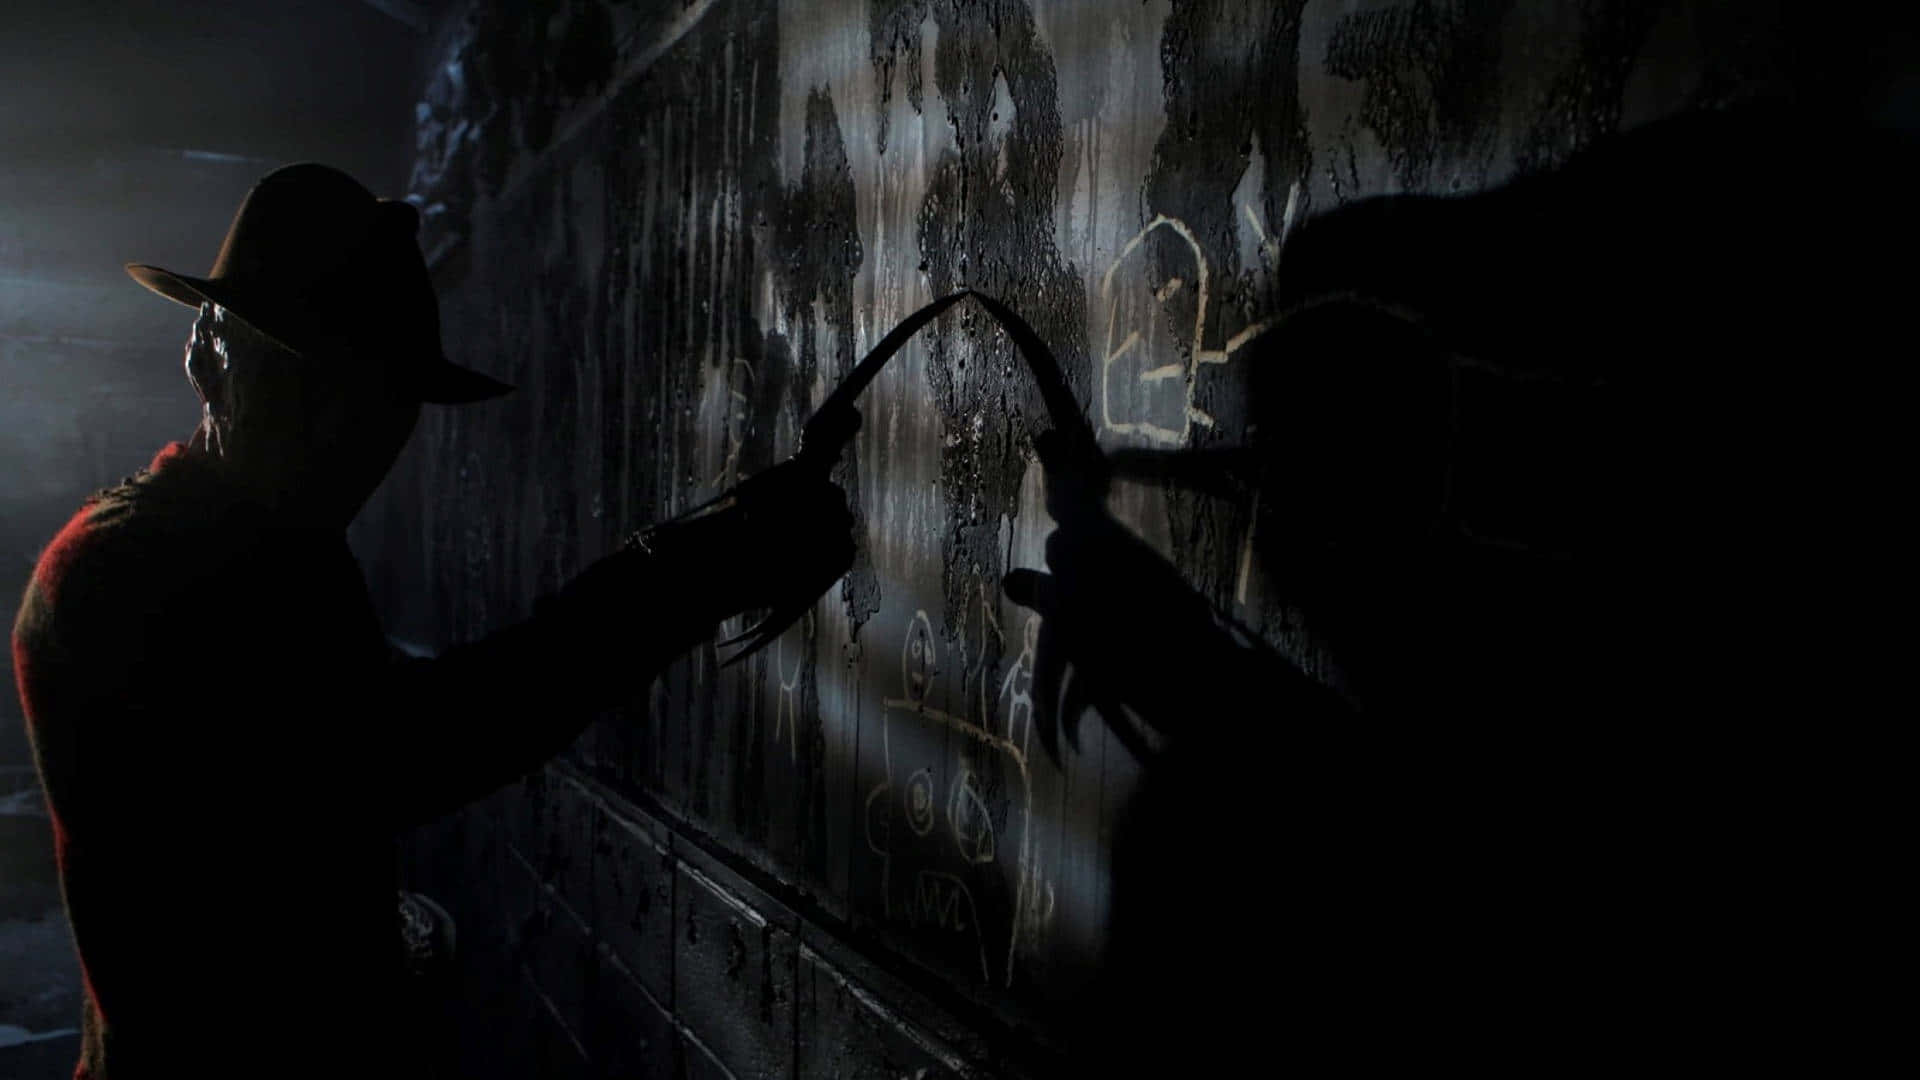 Freddy Krueger stalking through the shadows